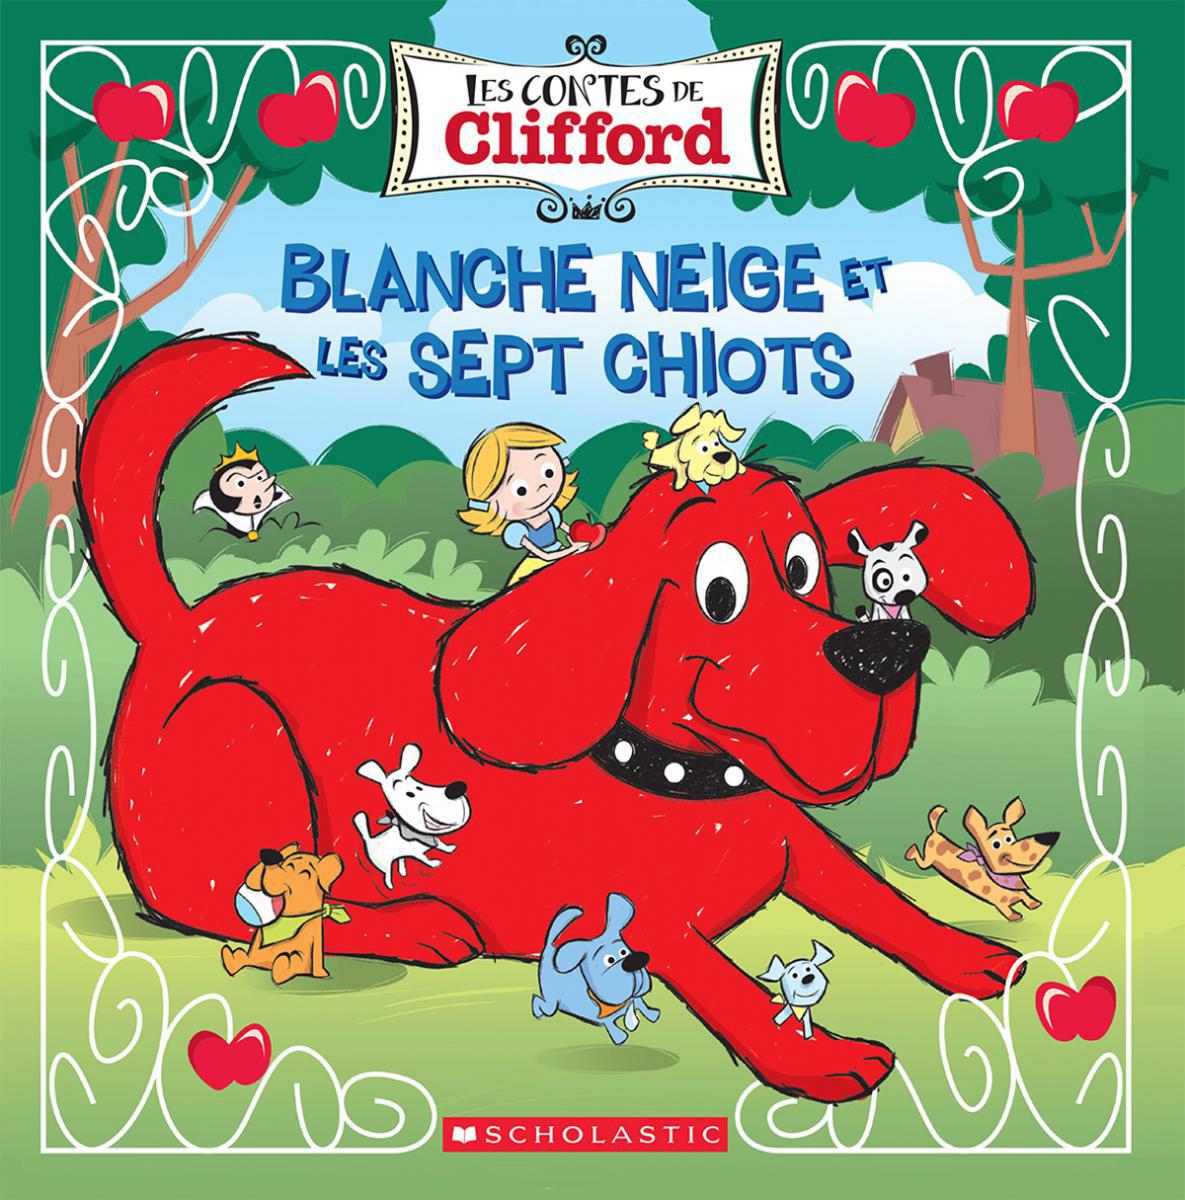  Les contes de Clifford : Blanche Neige et les sept chiots 